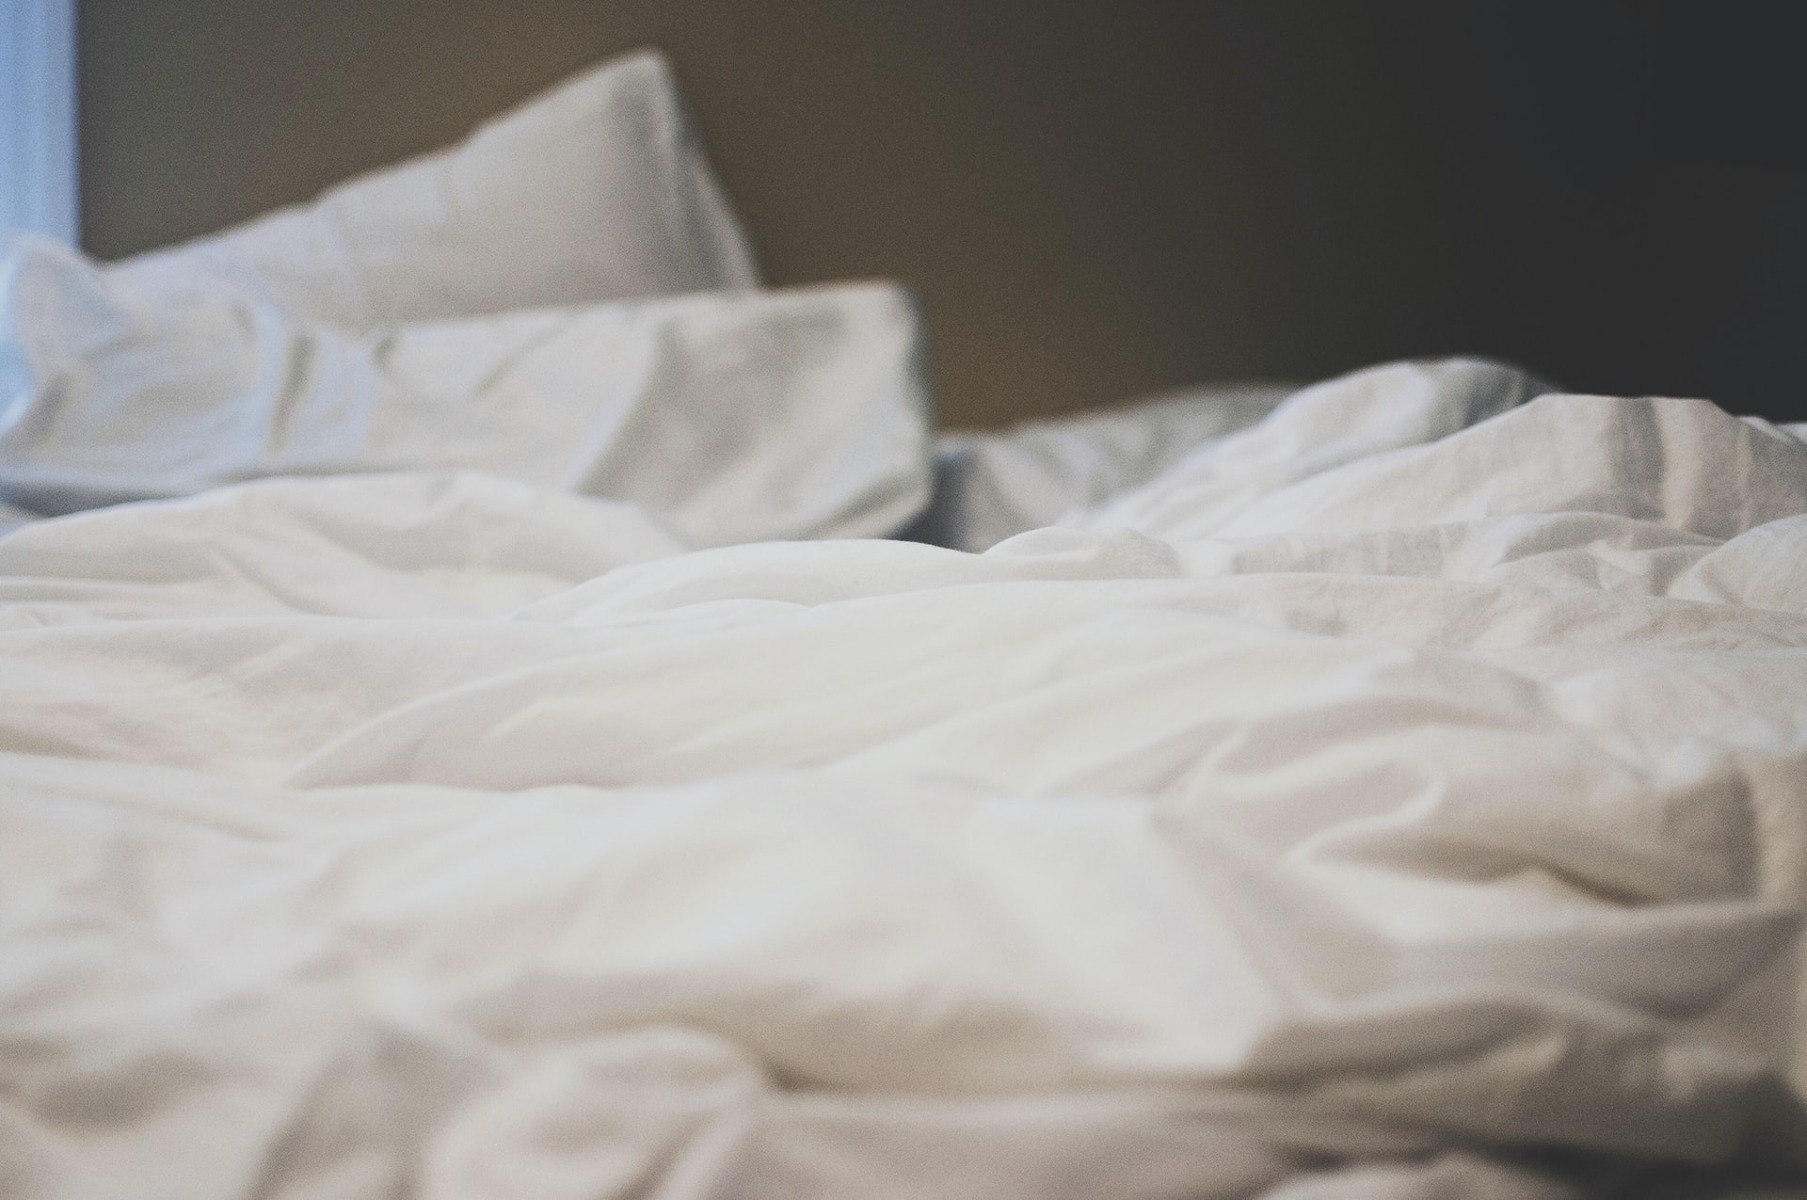 bed linen